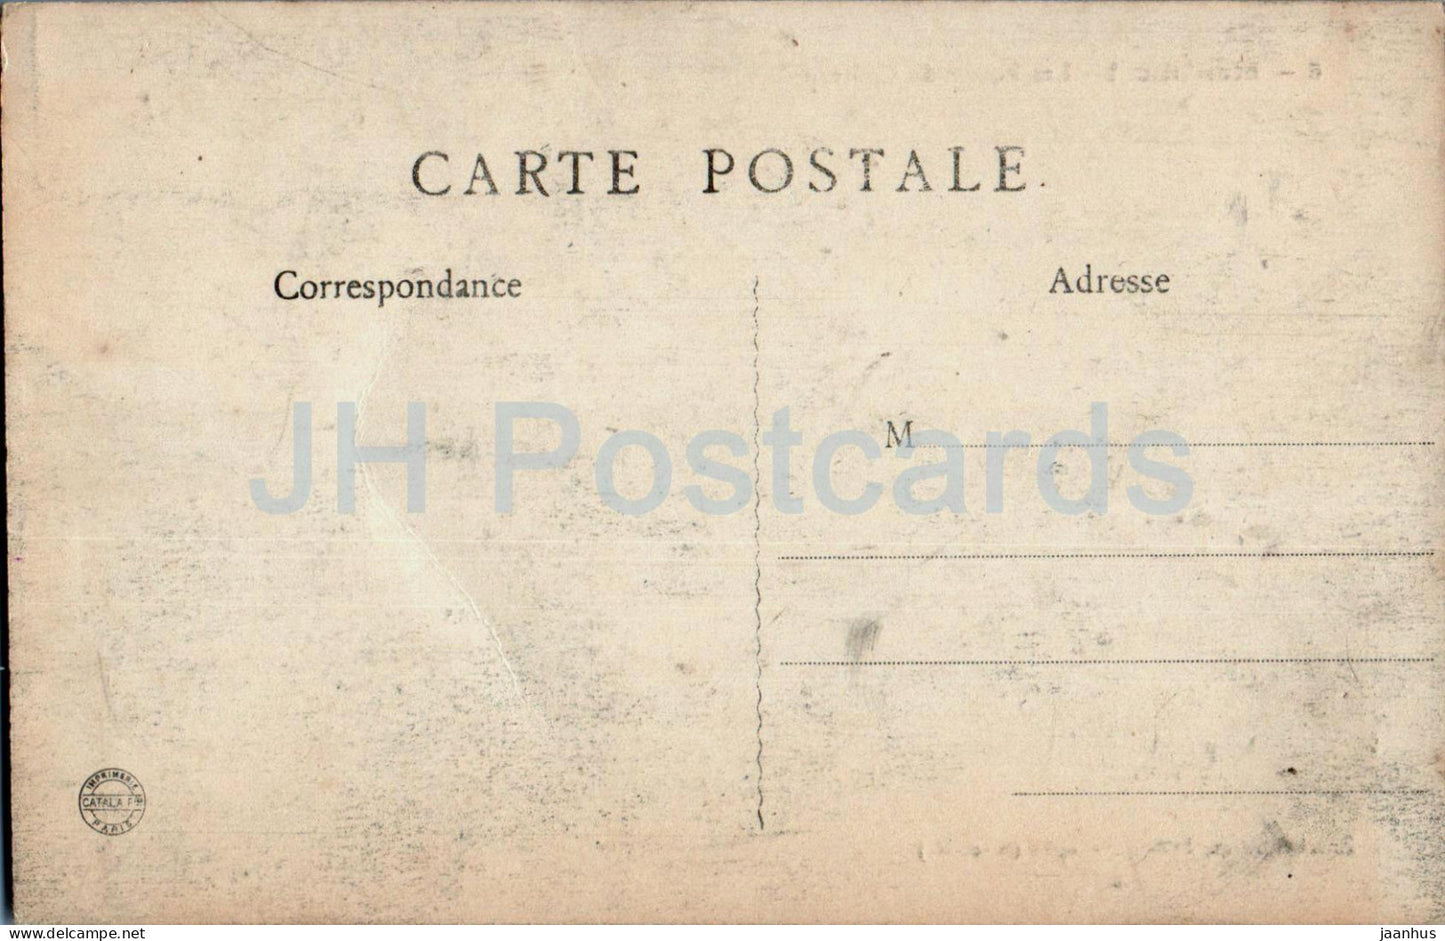 Montmort - Les Fosses du Chateau - castle - 8 - old postcard - France - unused